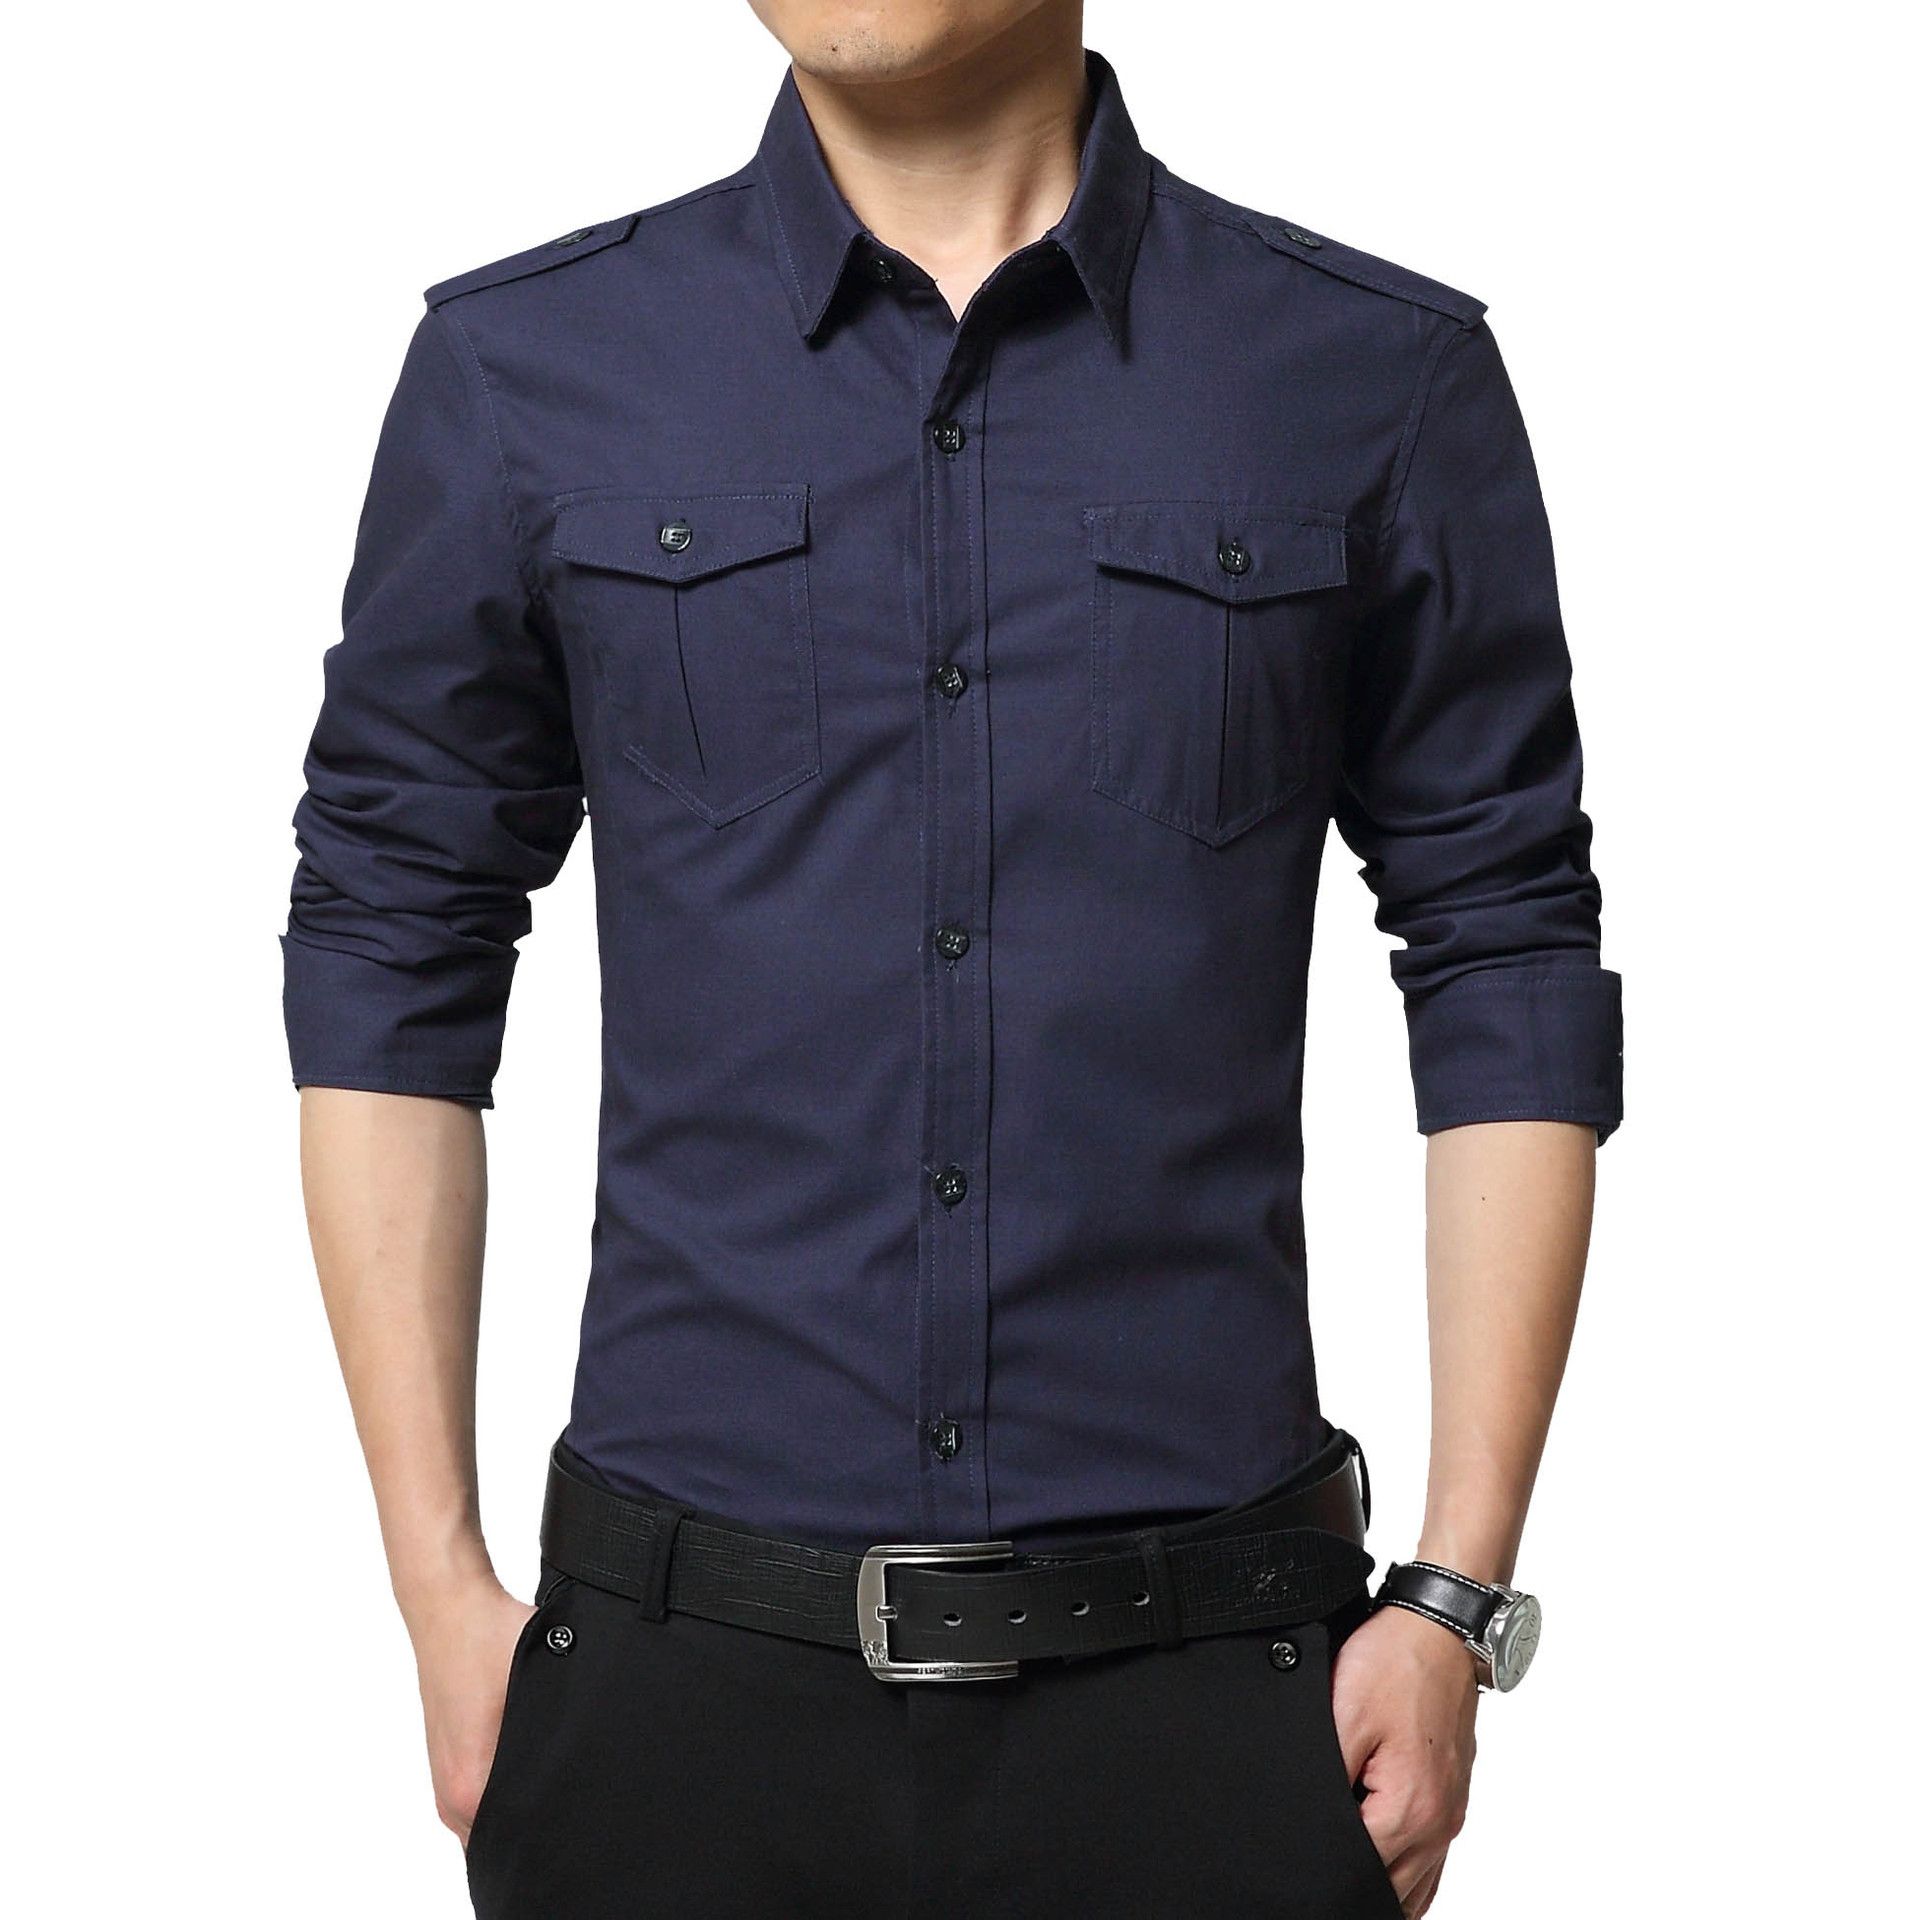 2019 Camisas de los de la moda Slim Fit camisas casuales de los hombres de larga Cuello de Formal Vestido Camisas Hombres Ropa Camisa